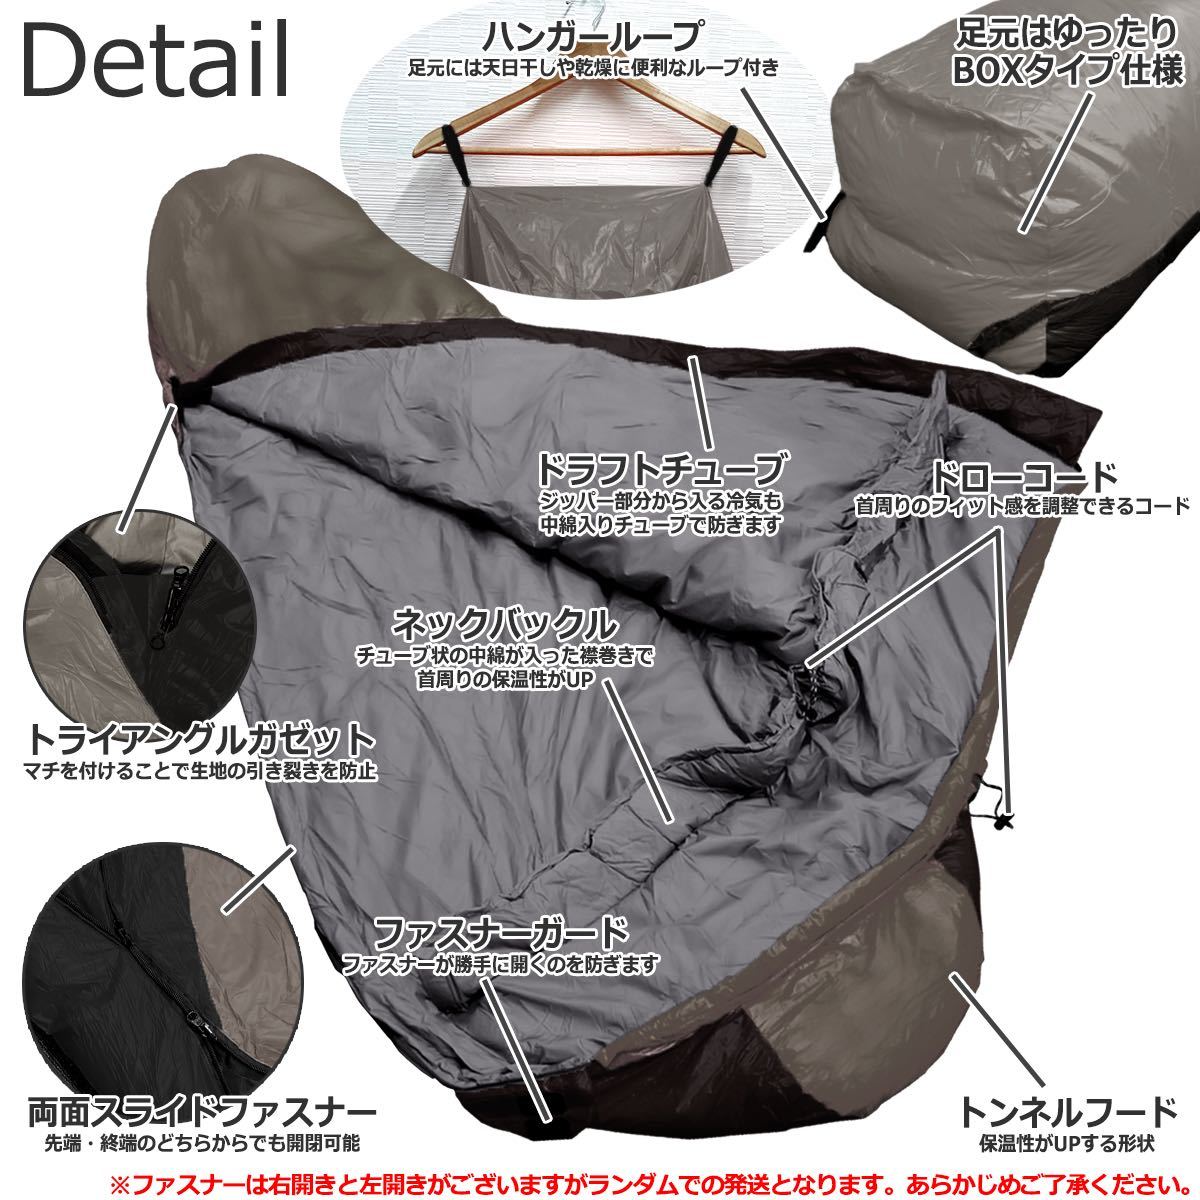 ダウン 寝袋 軽量コンパクト マミー型 シュラフ 羽毛 限界使用温度 -25℃